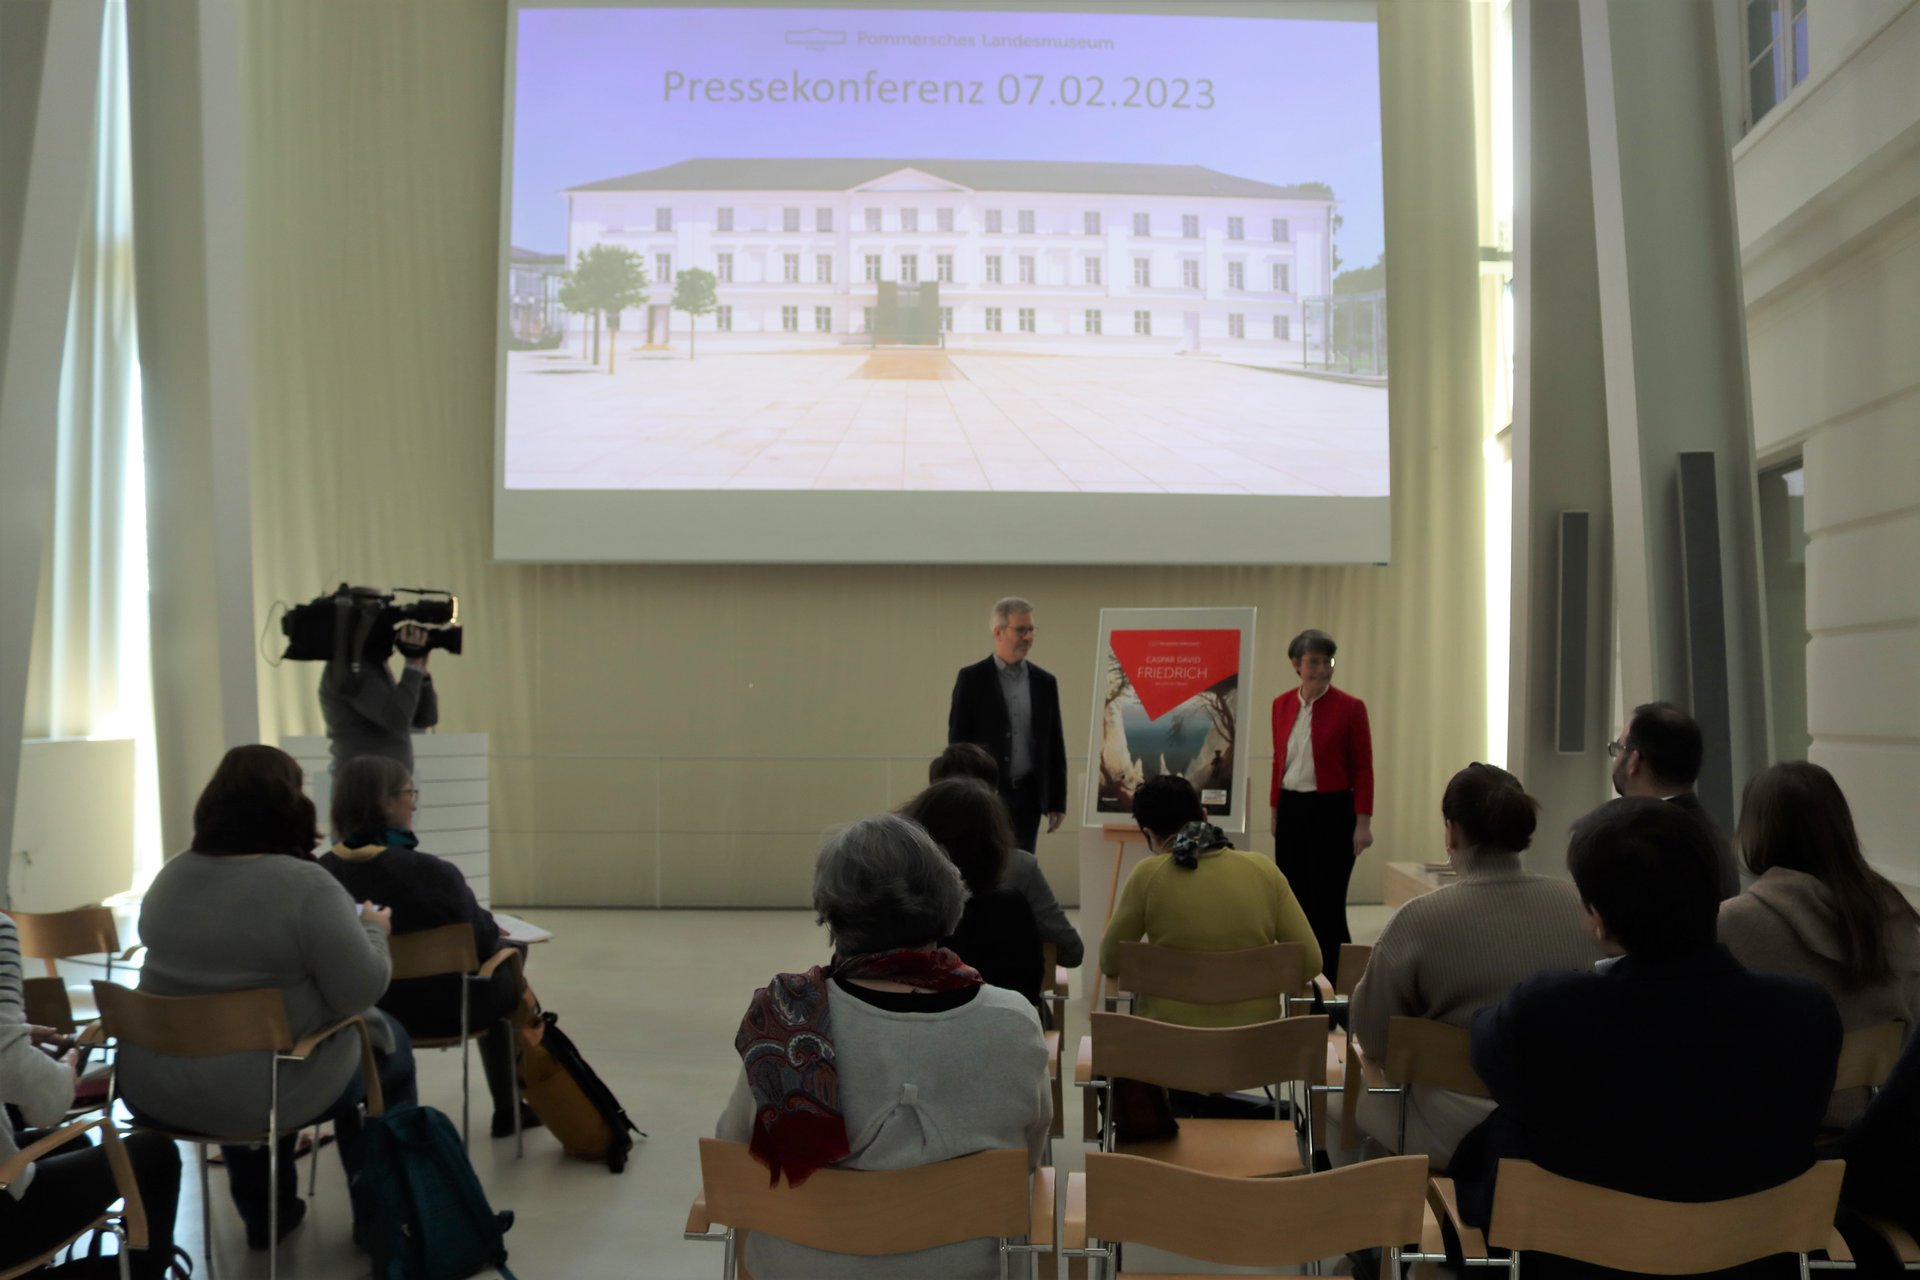 Pressekonferenz: Die Kreidefelsen kommen nach Greifswald! Foto: Henriette Maxin